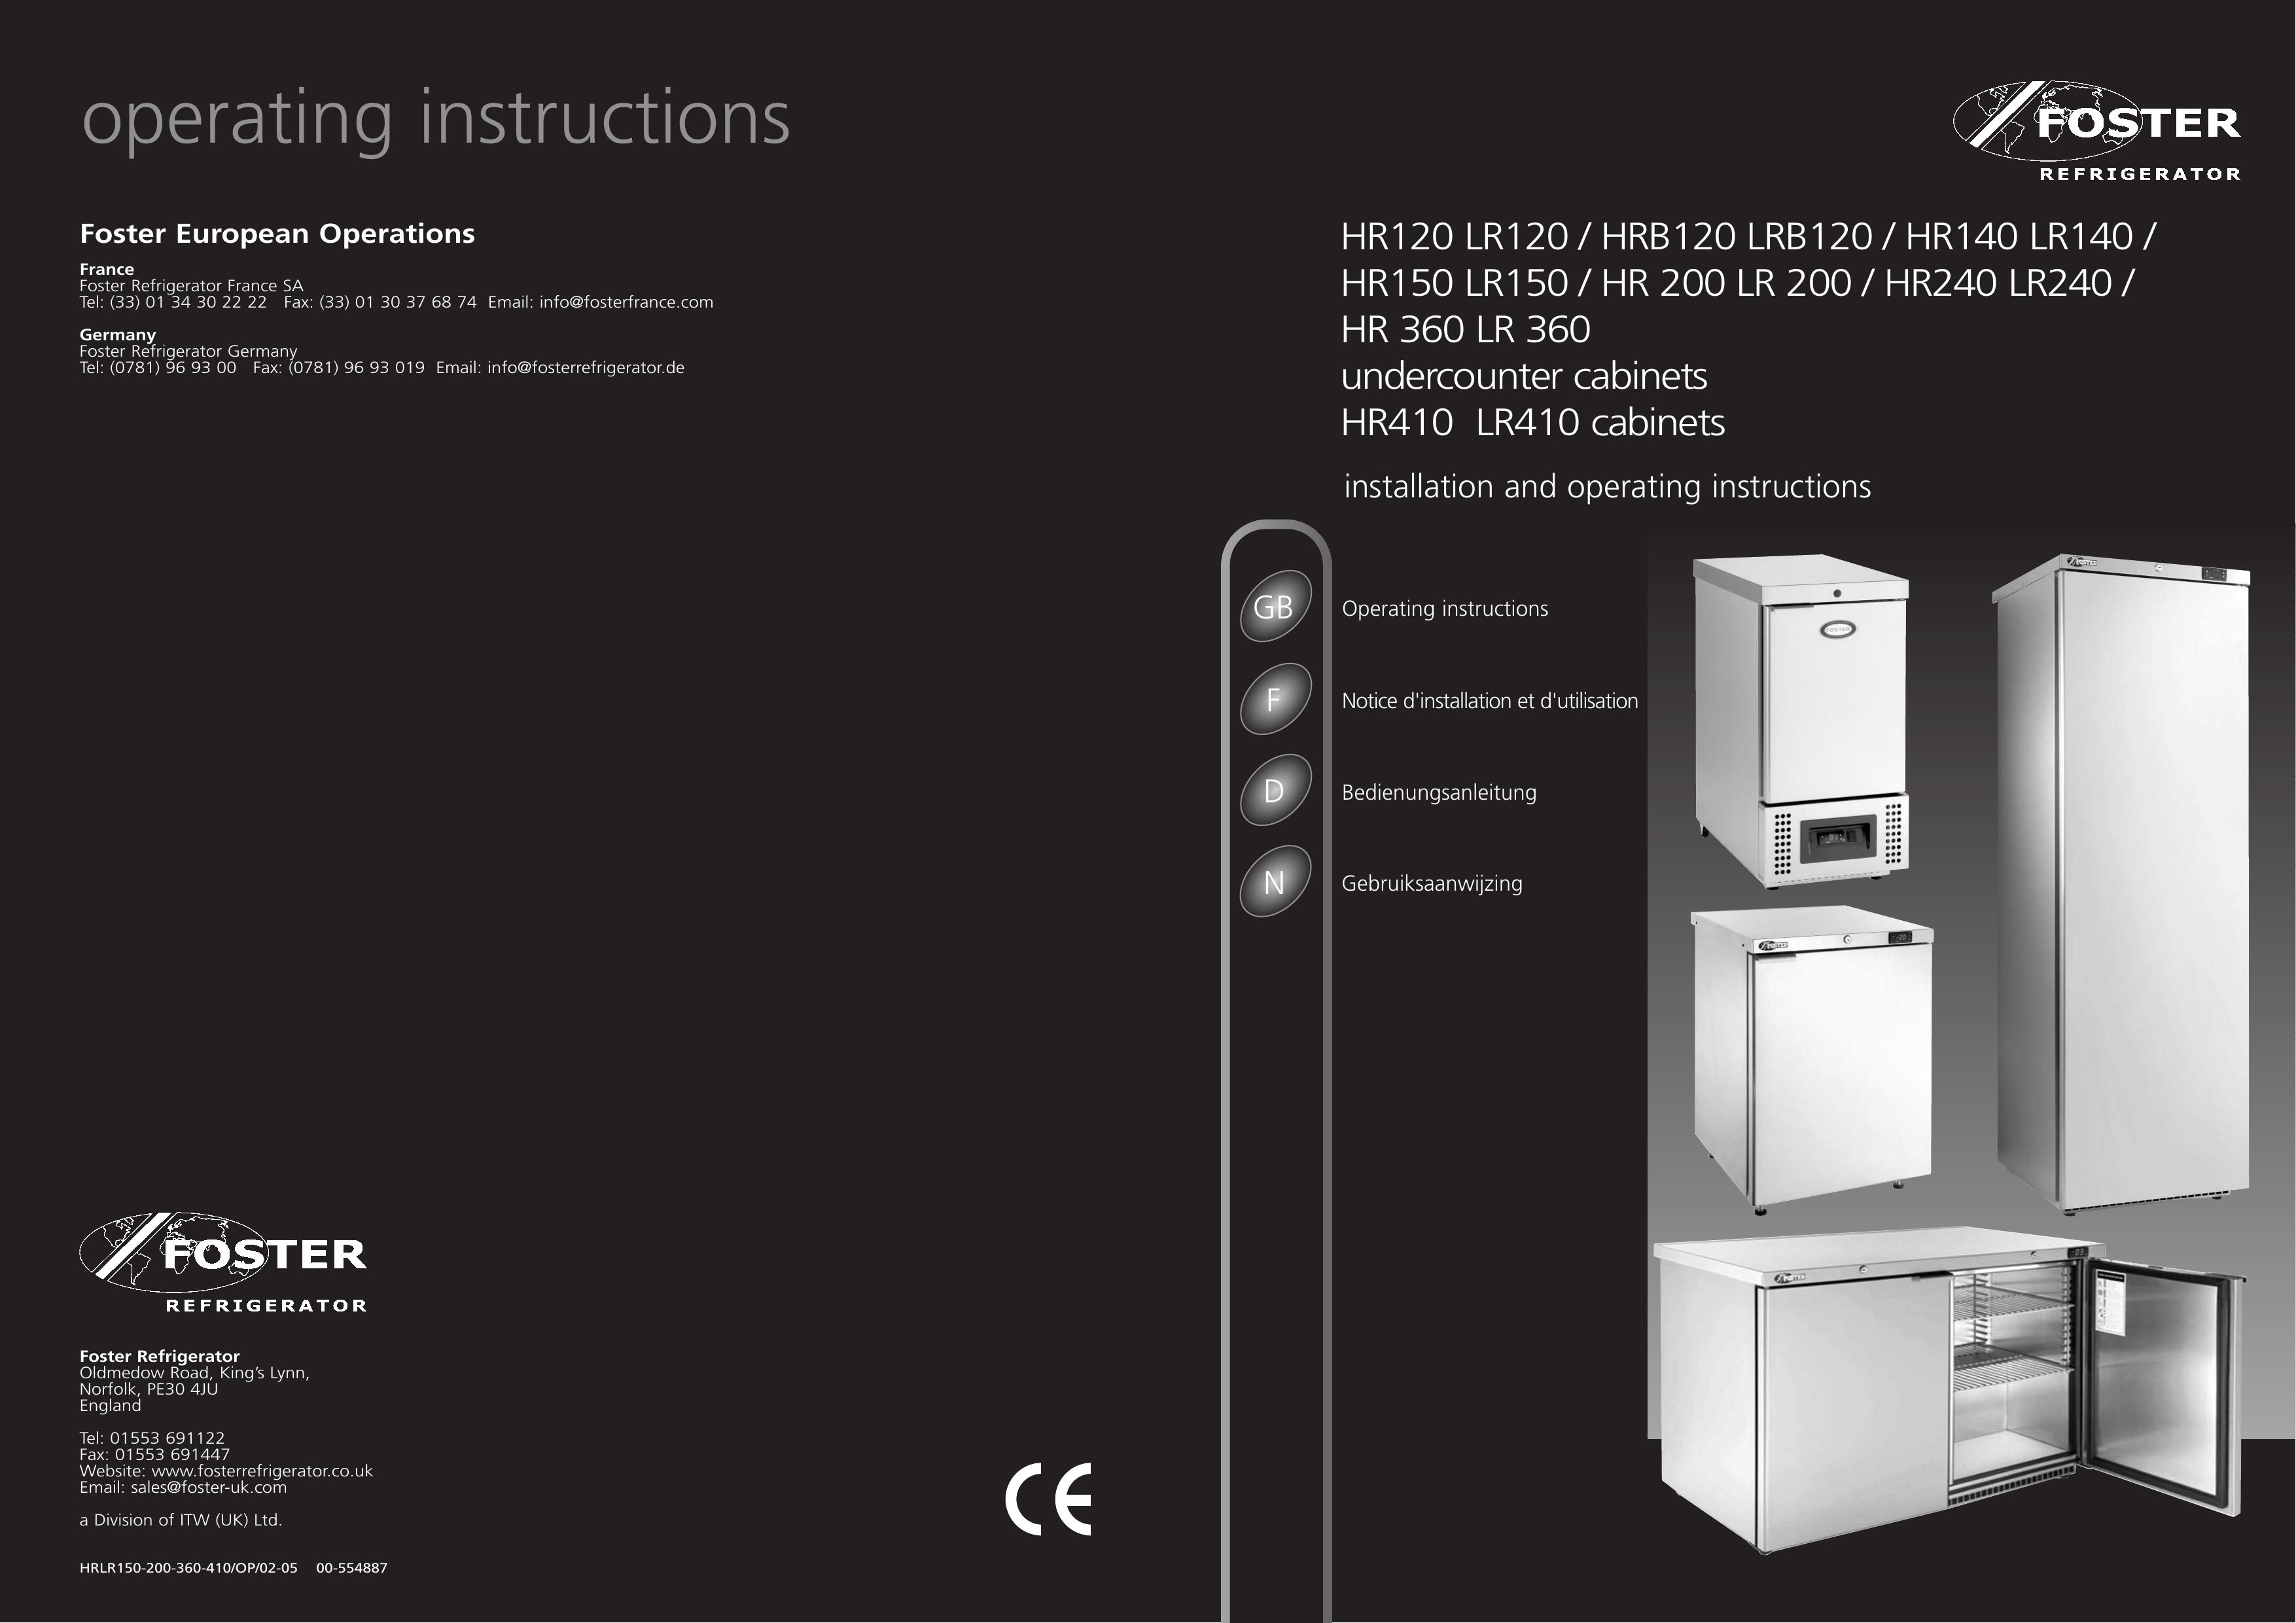 Foster HR 360 LR 360 Refrigerator User Manual